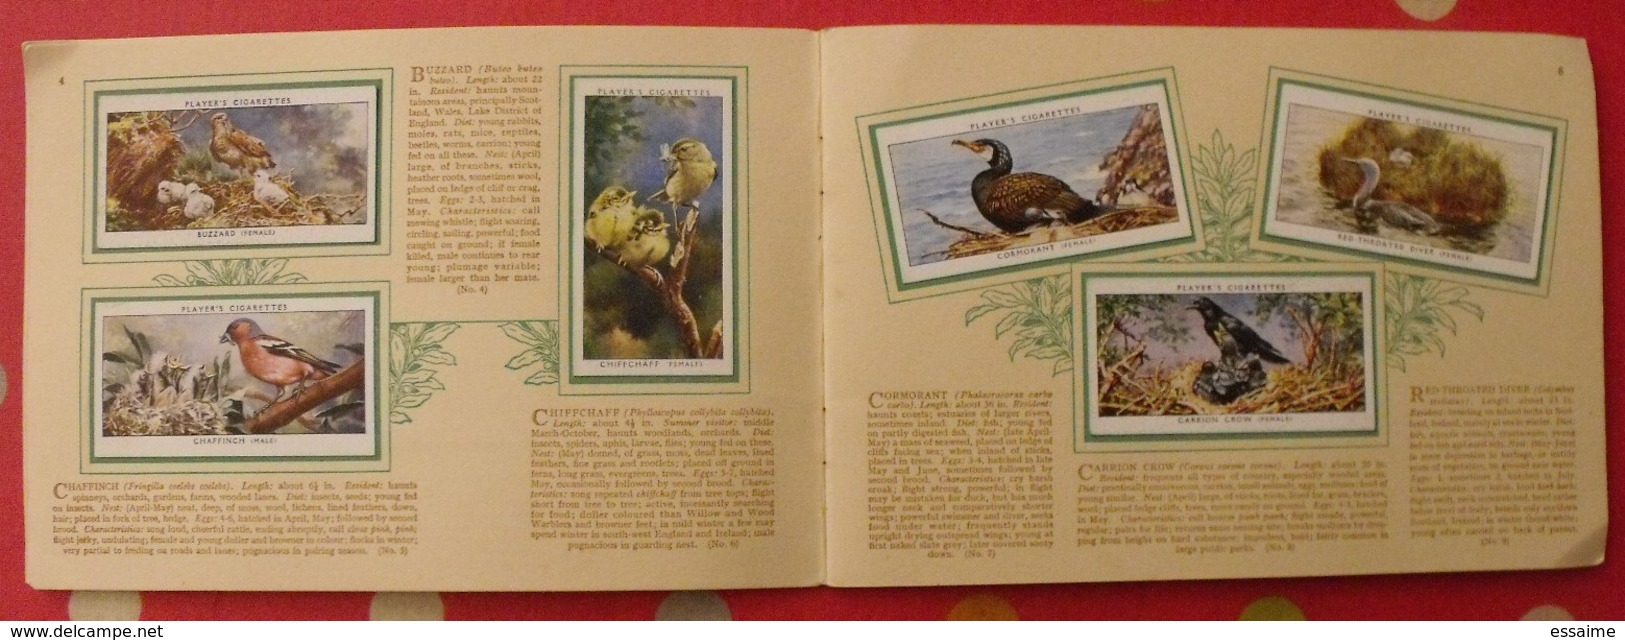 Album D'images Cigarette Pictures Card John Player. En Anglais. Birds & Young, Oiseaux & Petits. 1935. 50 Chromo - Sammelbilderalben & Katalogue